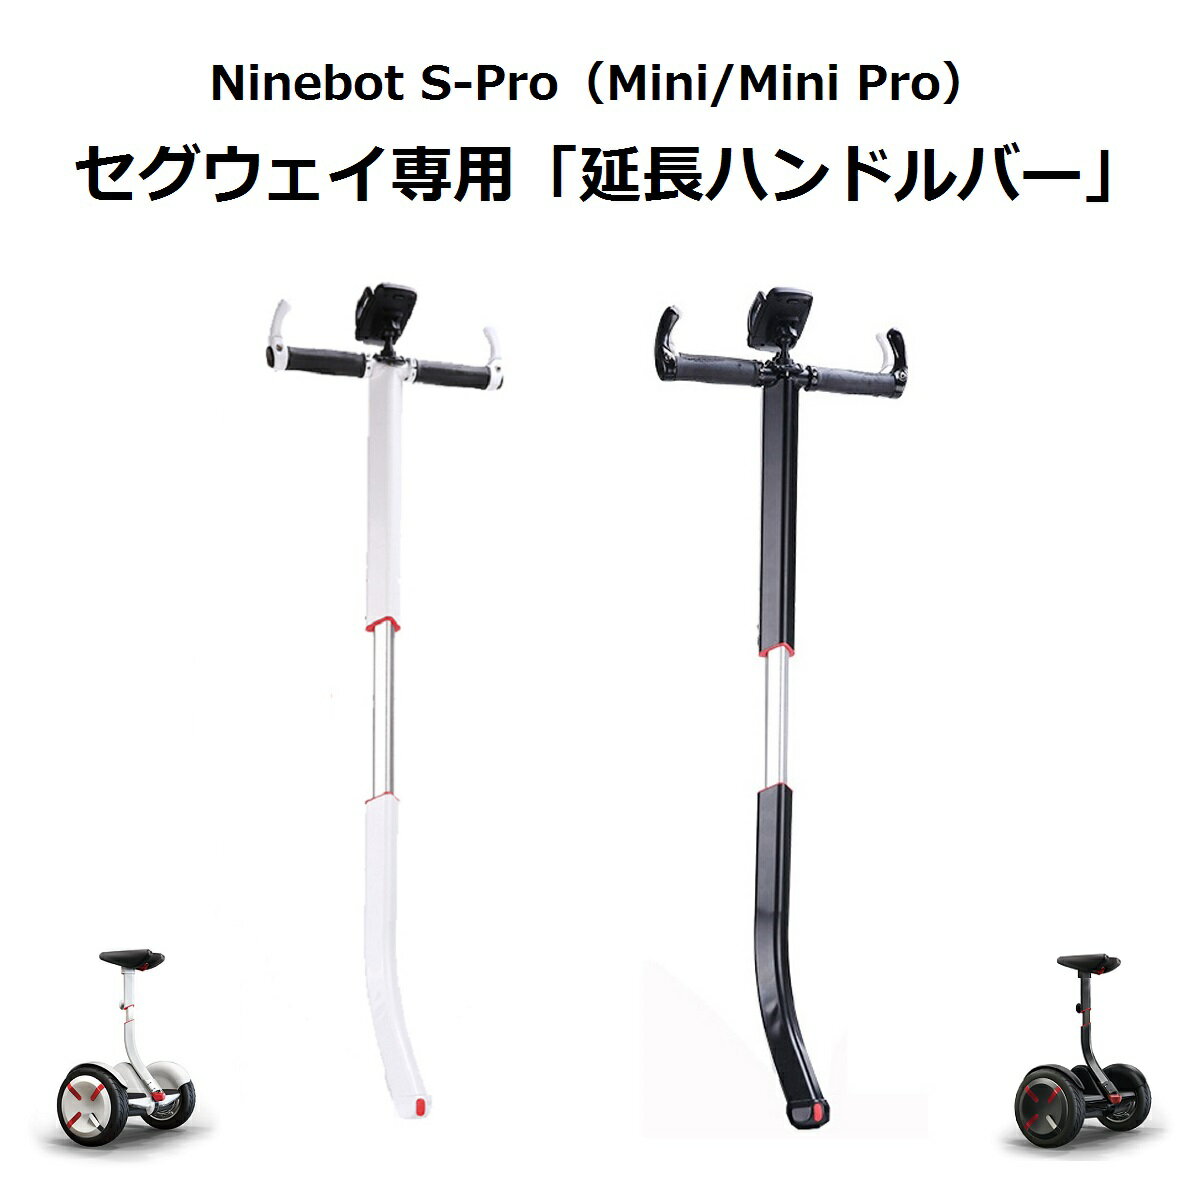 商品名：Ninebot S-Pro / mini / mini Pro用ハンドステアリングバー色：ホワイト／ブラック　2色材質：アルミ、PU樹脂等特徴：身長に合わせて高さ調整可能、スマホホルダー付対応機種：Ninebot S-Pro、Ninebot mini Pro、Ninebot mini注意：本品はNinebot S-Pro用オプションパーツになります。Ninebot S-Pro本体ではありません。お客様のご都合による返品・交換はお受けいたしかねますので、あらかじめご了承ください。商品のご注文時には、商品説明をご確認のうえ、ご注文いただけますようお願い申し上げます。--------------------------------------------JANコード：4589853000505--------------------------------------------